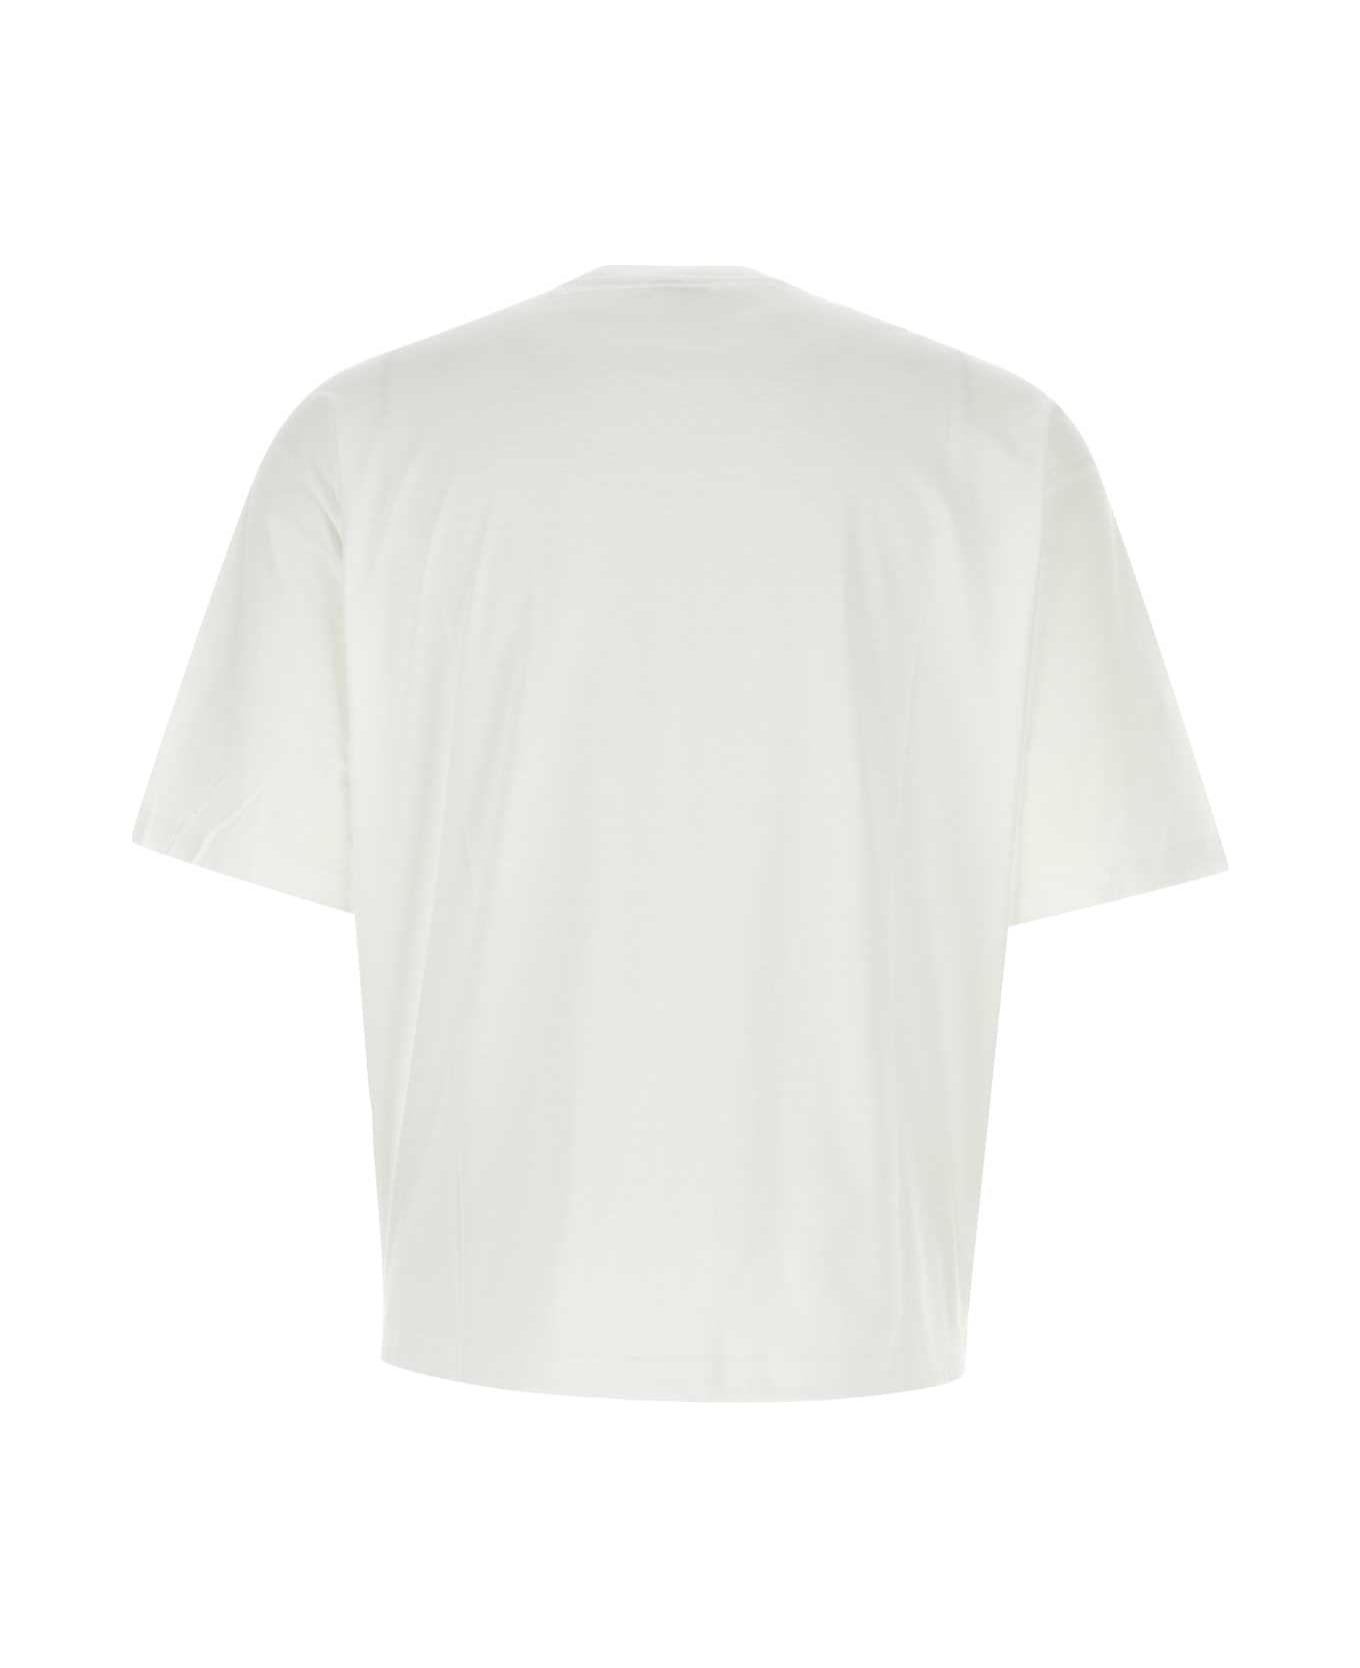 Lanvin White Cotton Oversize T-shirt - OPTICWHITE シャツ